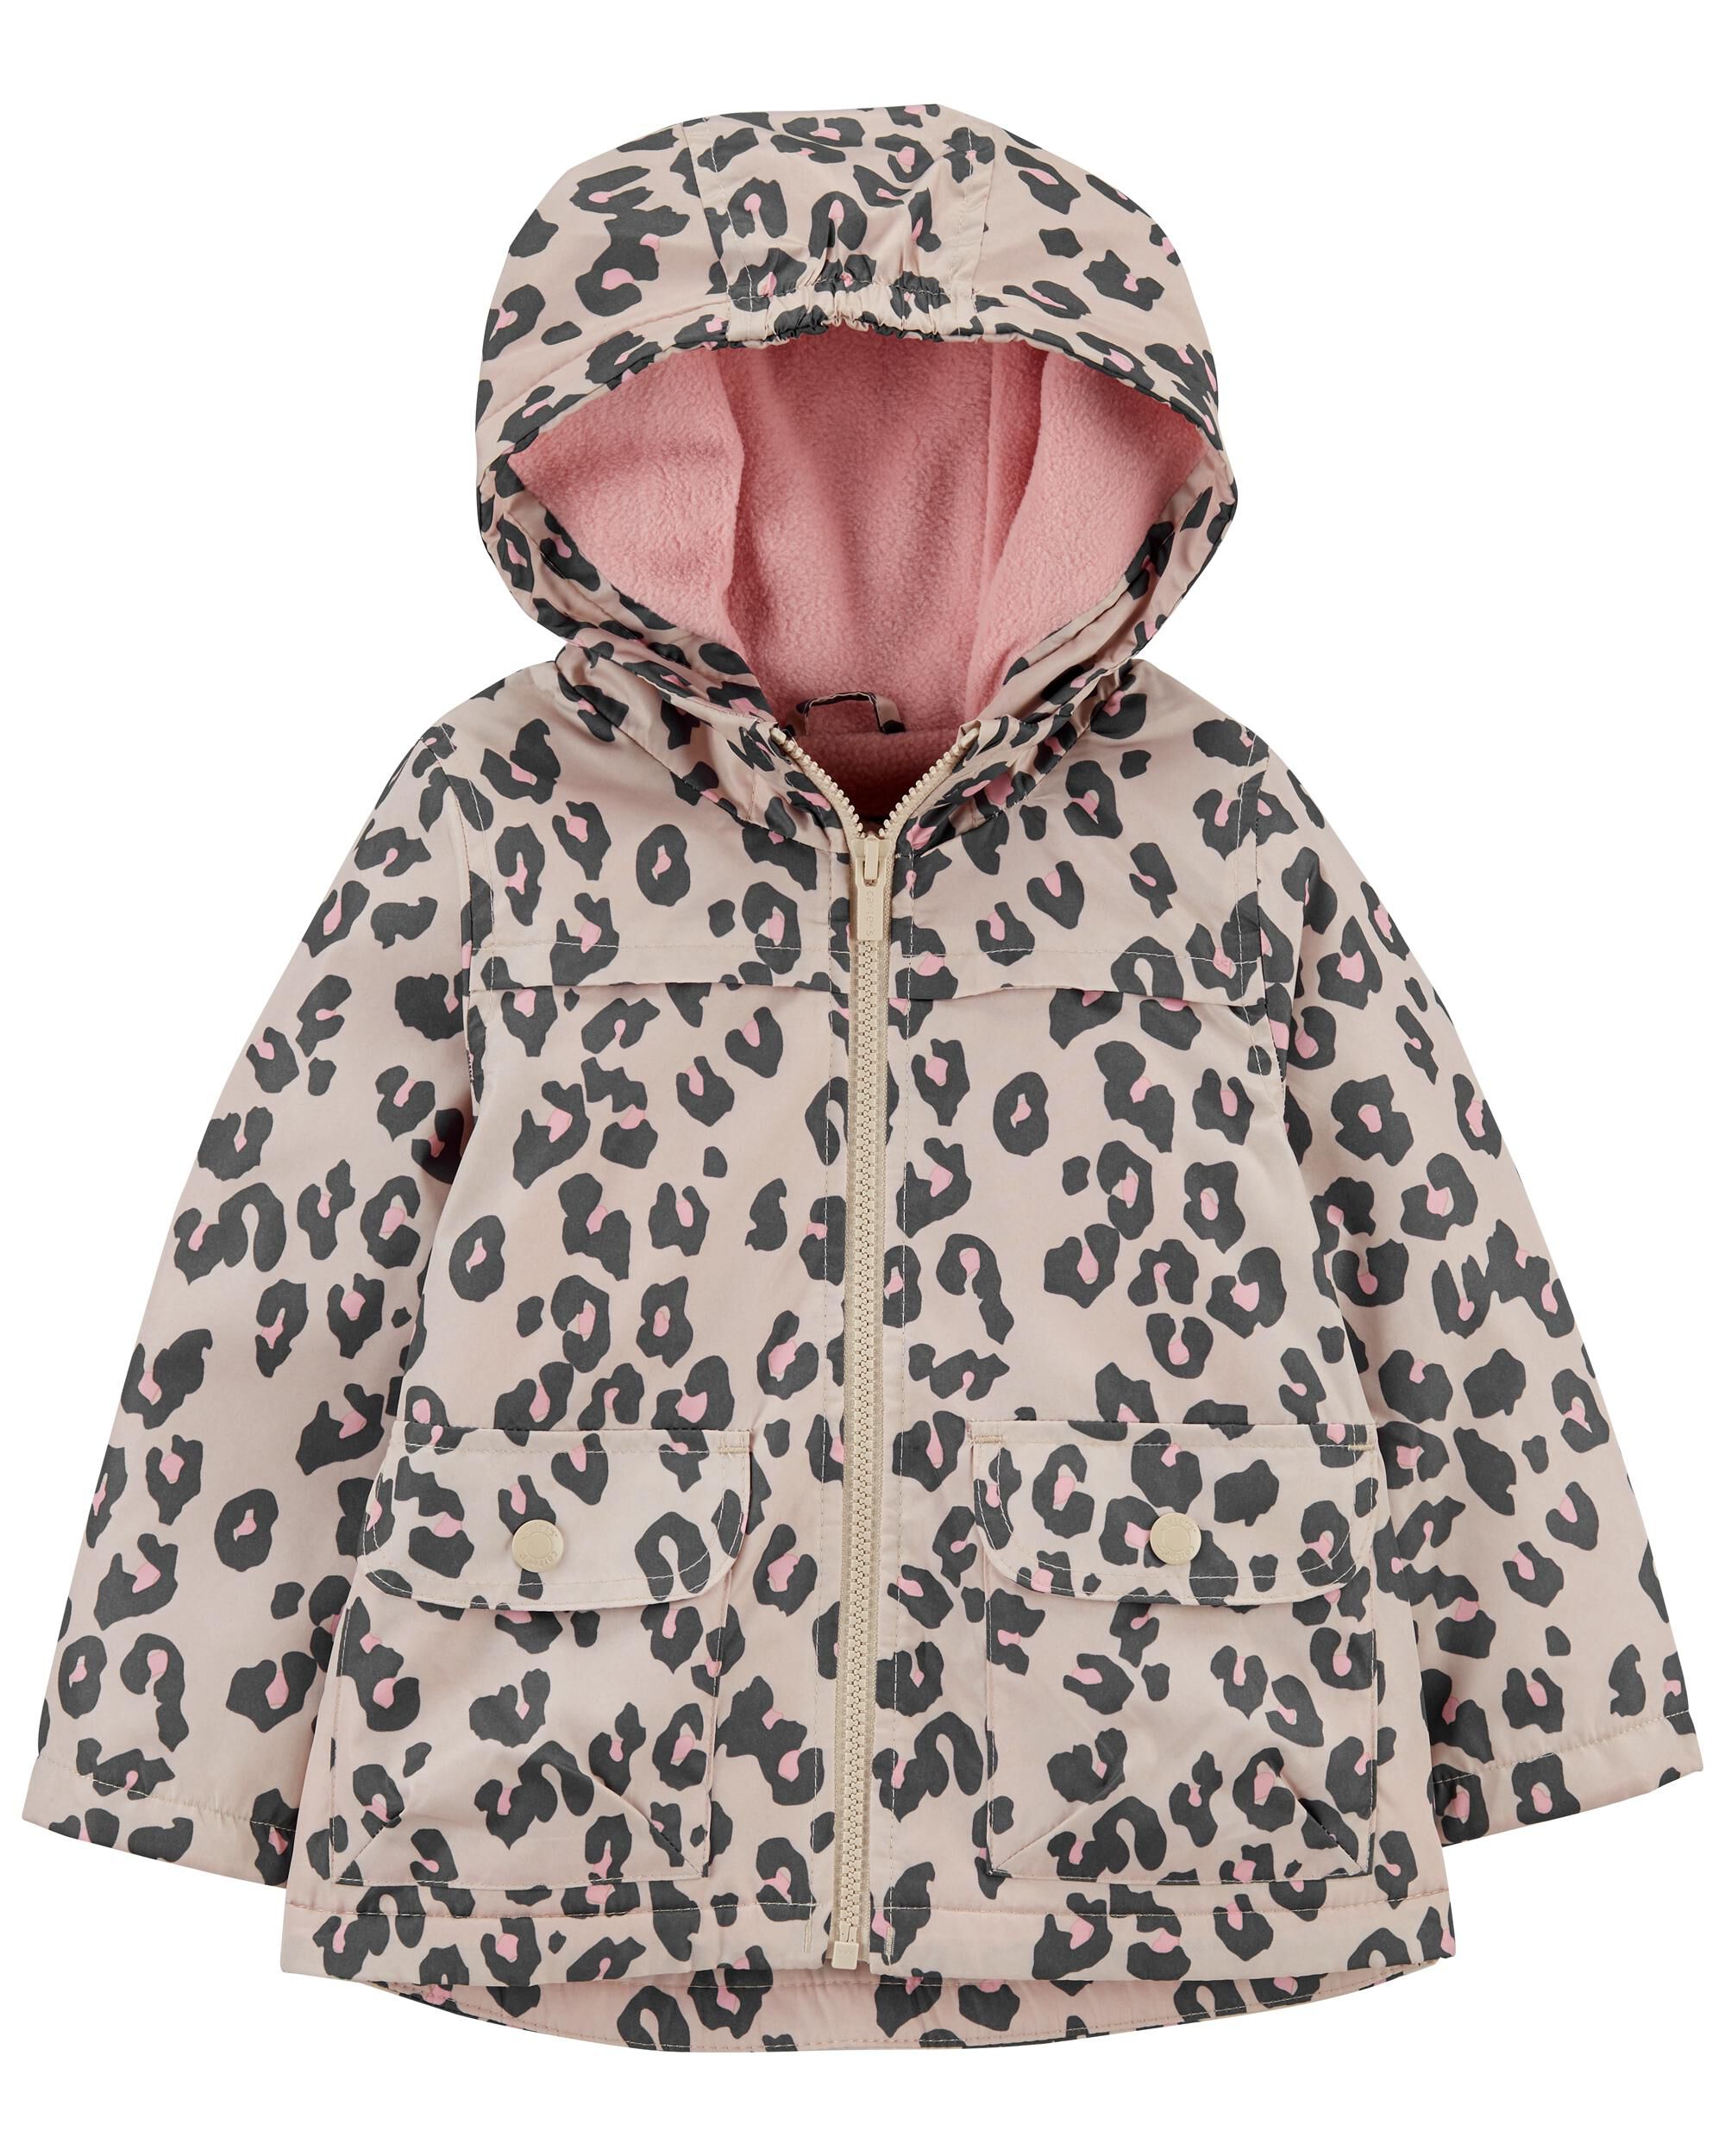 Carter's Girls Pink Leopard Fleece Lined Jacket Size 2T 3T 4T 4 5/6 6X